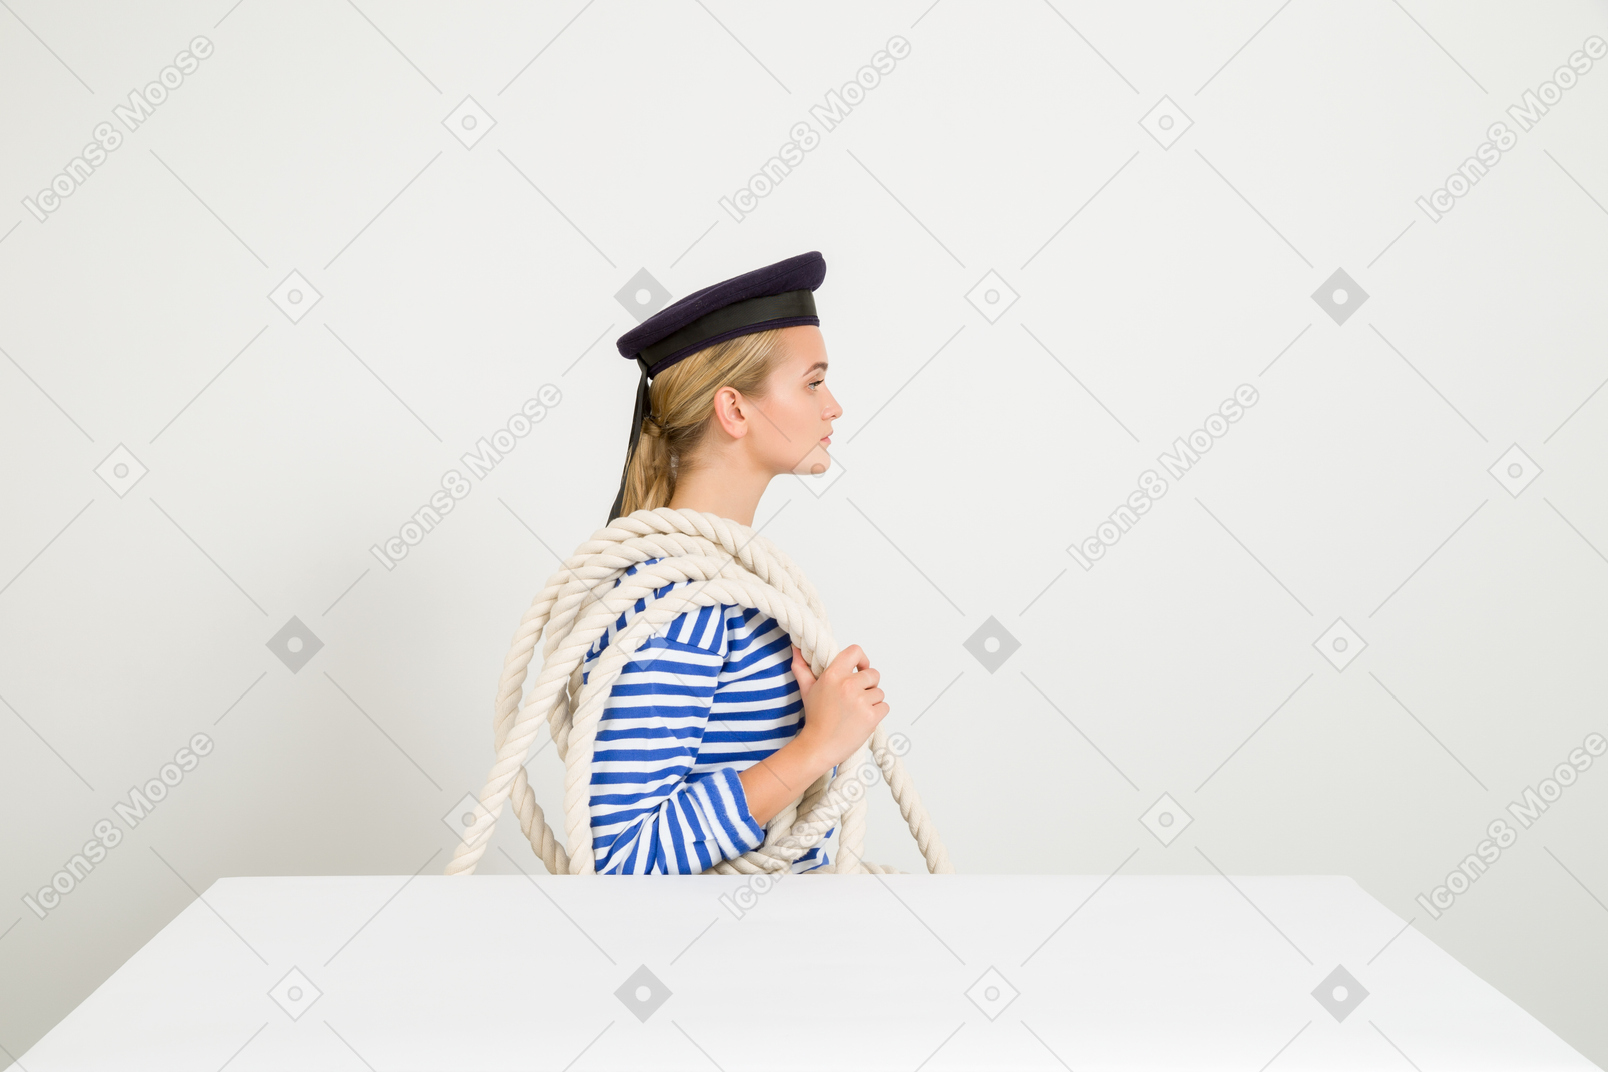 Mujer marinera sentada de perfil con una cuerda por encima del hombro.